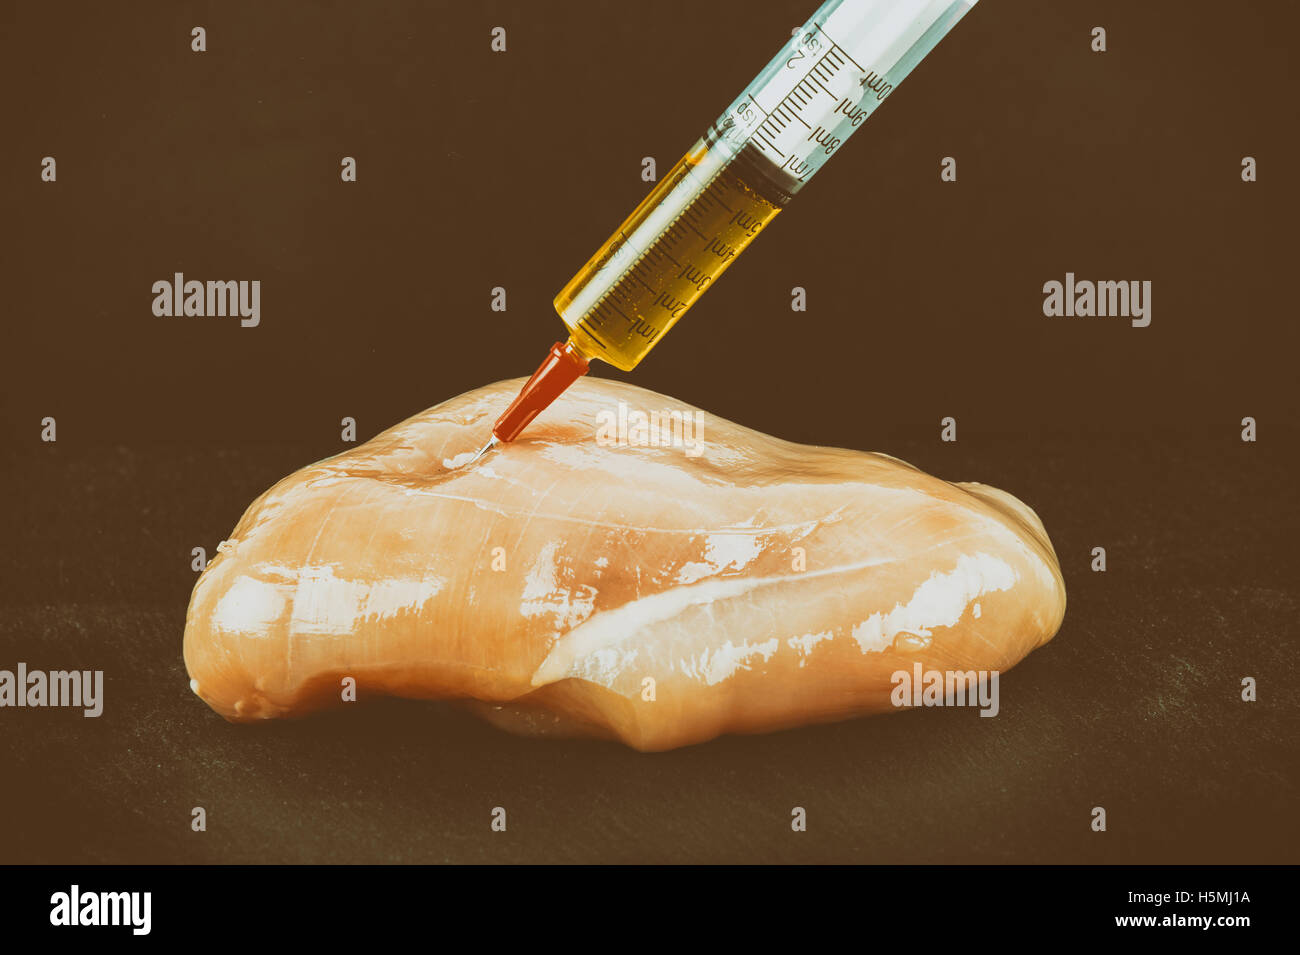 Jeringa con líquido inyectado a un trozo de carne. Ilustración conceptual de hormonas y antibióticos en la producción de alimentos. Foto de stock